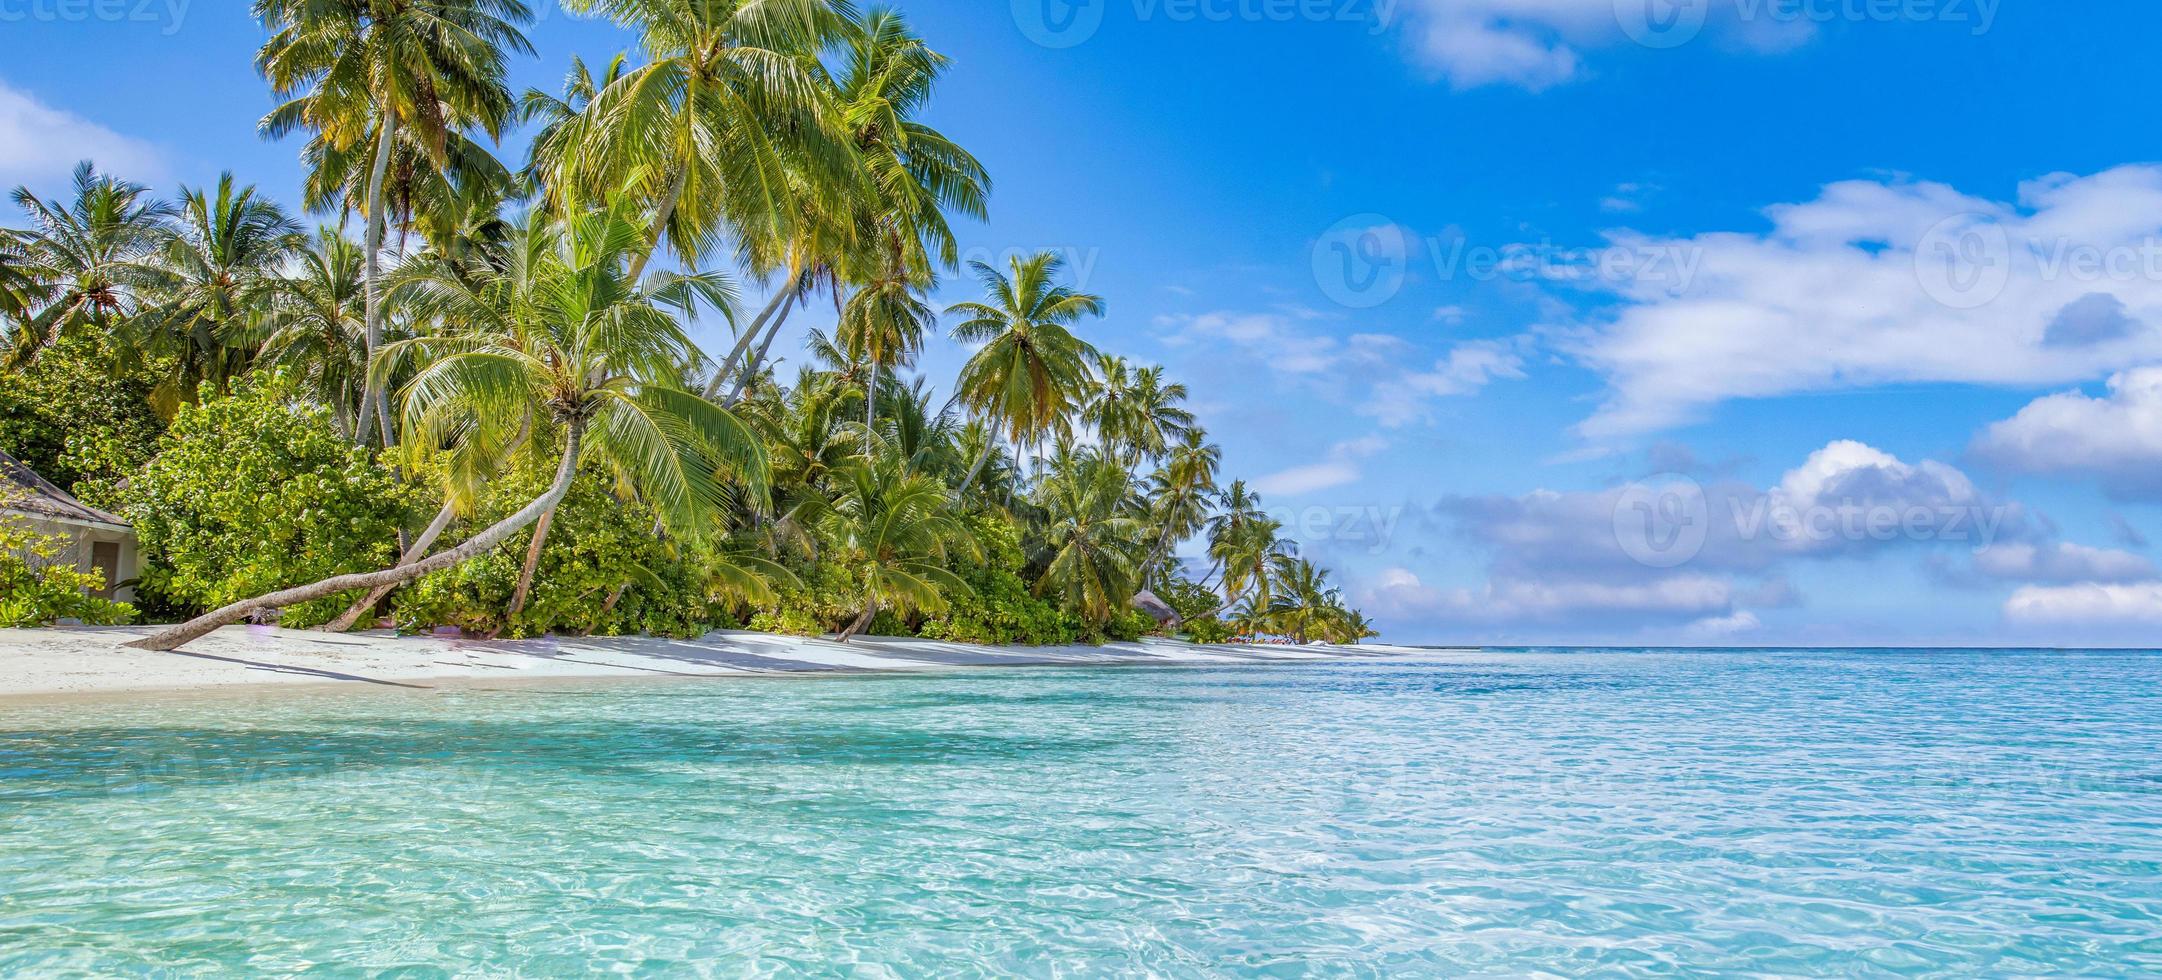 zomer reizen achtergrond. exotisch tropisch strand eiland, paradijs kust. palm bomen wit zand, verbazingwekkend lucht oceaan lagune. fantastisch mooi natuur panorama, zonnig dag idyllisch inspirerend vakantie foto